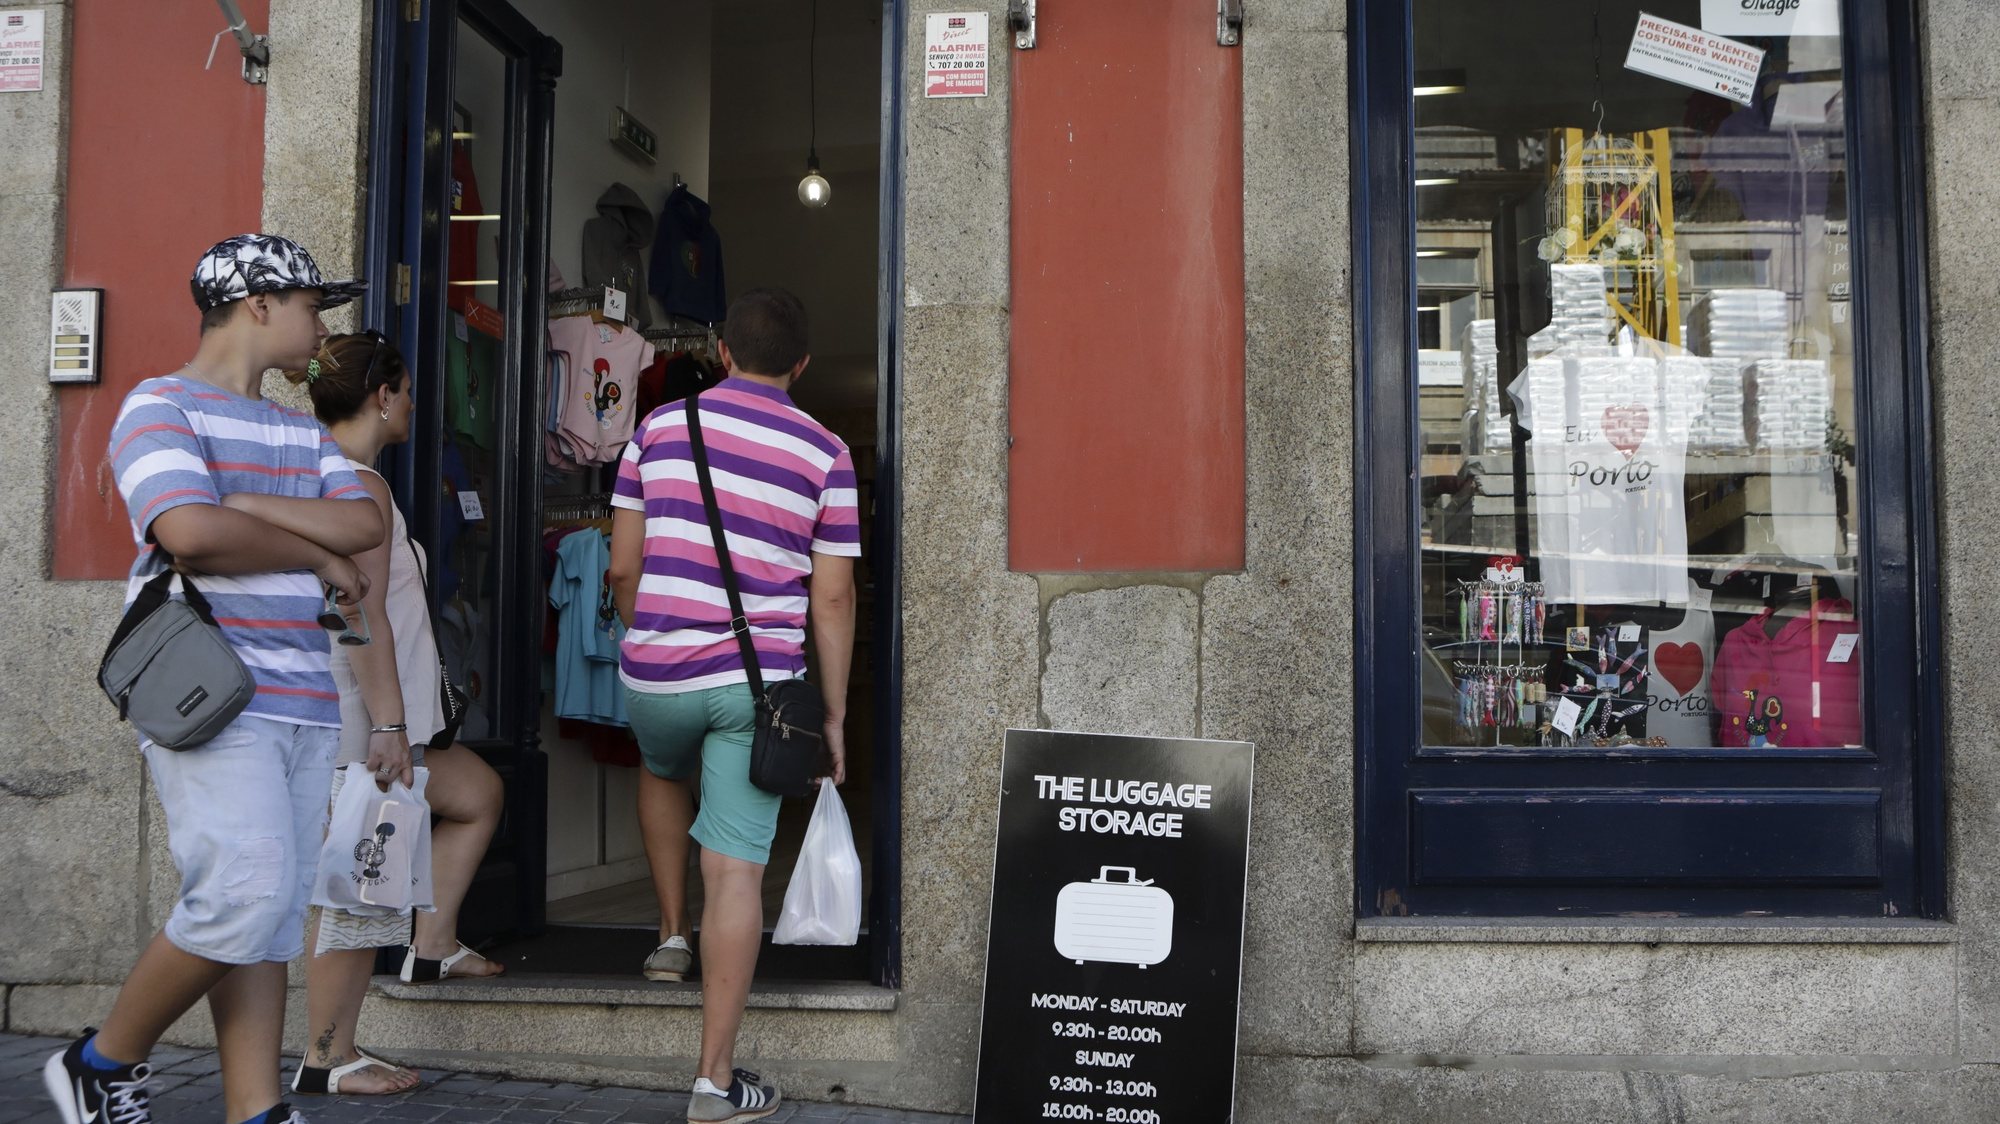 Estabelecimento na rua Mouzinho da Silveira para depósitar bagagens, Porto, 17 de agosto de 2017. O negócio dos ‘lockers’, cacifos para guardar bagagens, floresce no Porto para colmatar uma lacuna no mercado do alojamento local, invadindo cafés, lojas de ‘design’ ou de aluguer de bicicletas e ‘scooters’ ou estações de metro e comboios. (ACOMPANHA TEXTO DE 21/08/2017) JOSÉ COELHO/LUSA